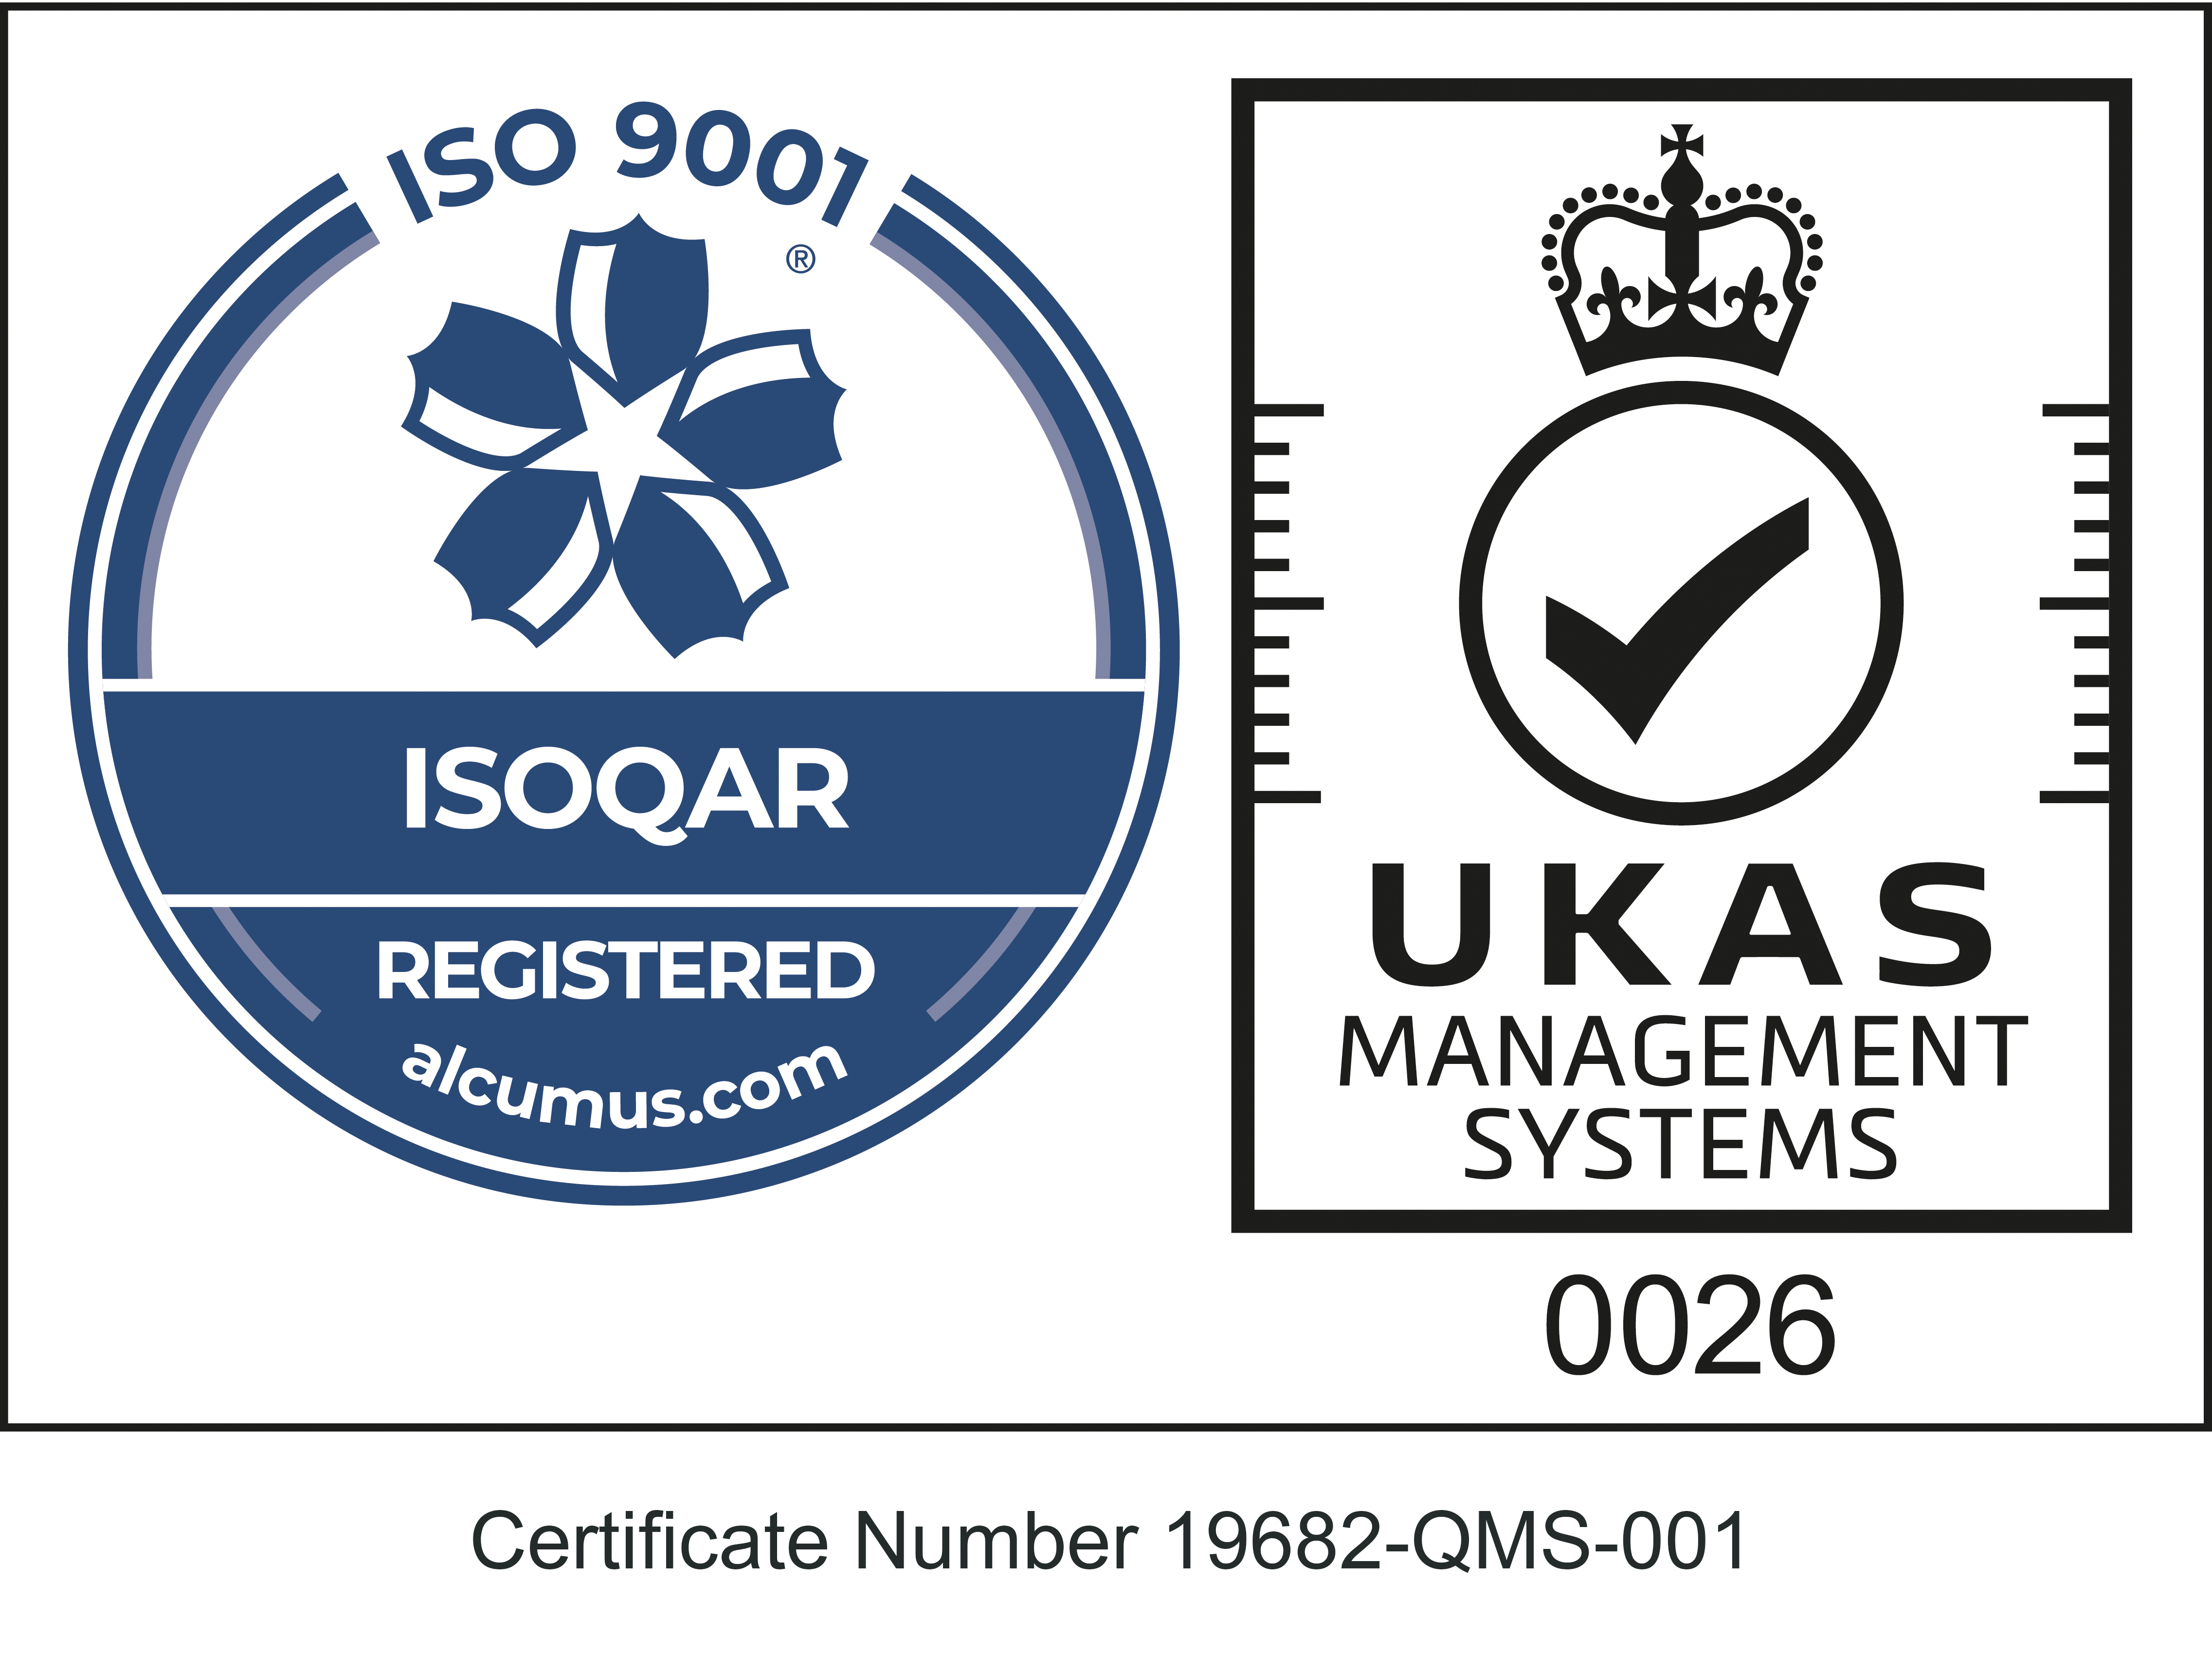 Fleet ID - ISO 9001